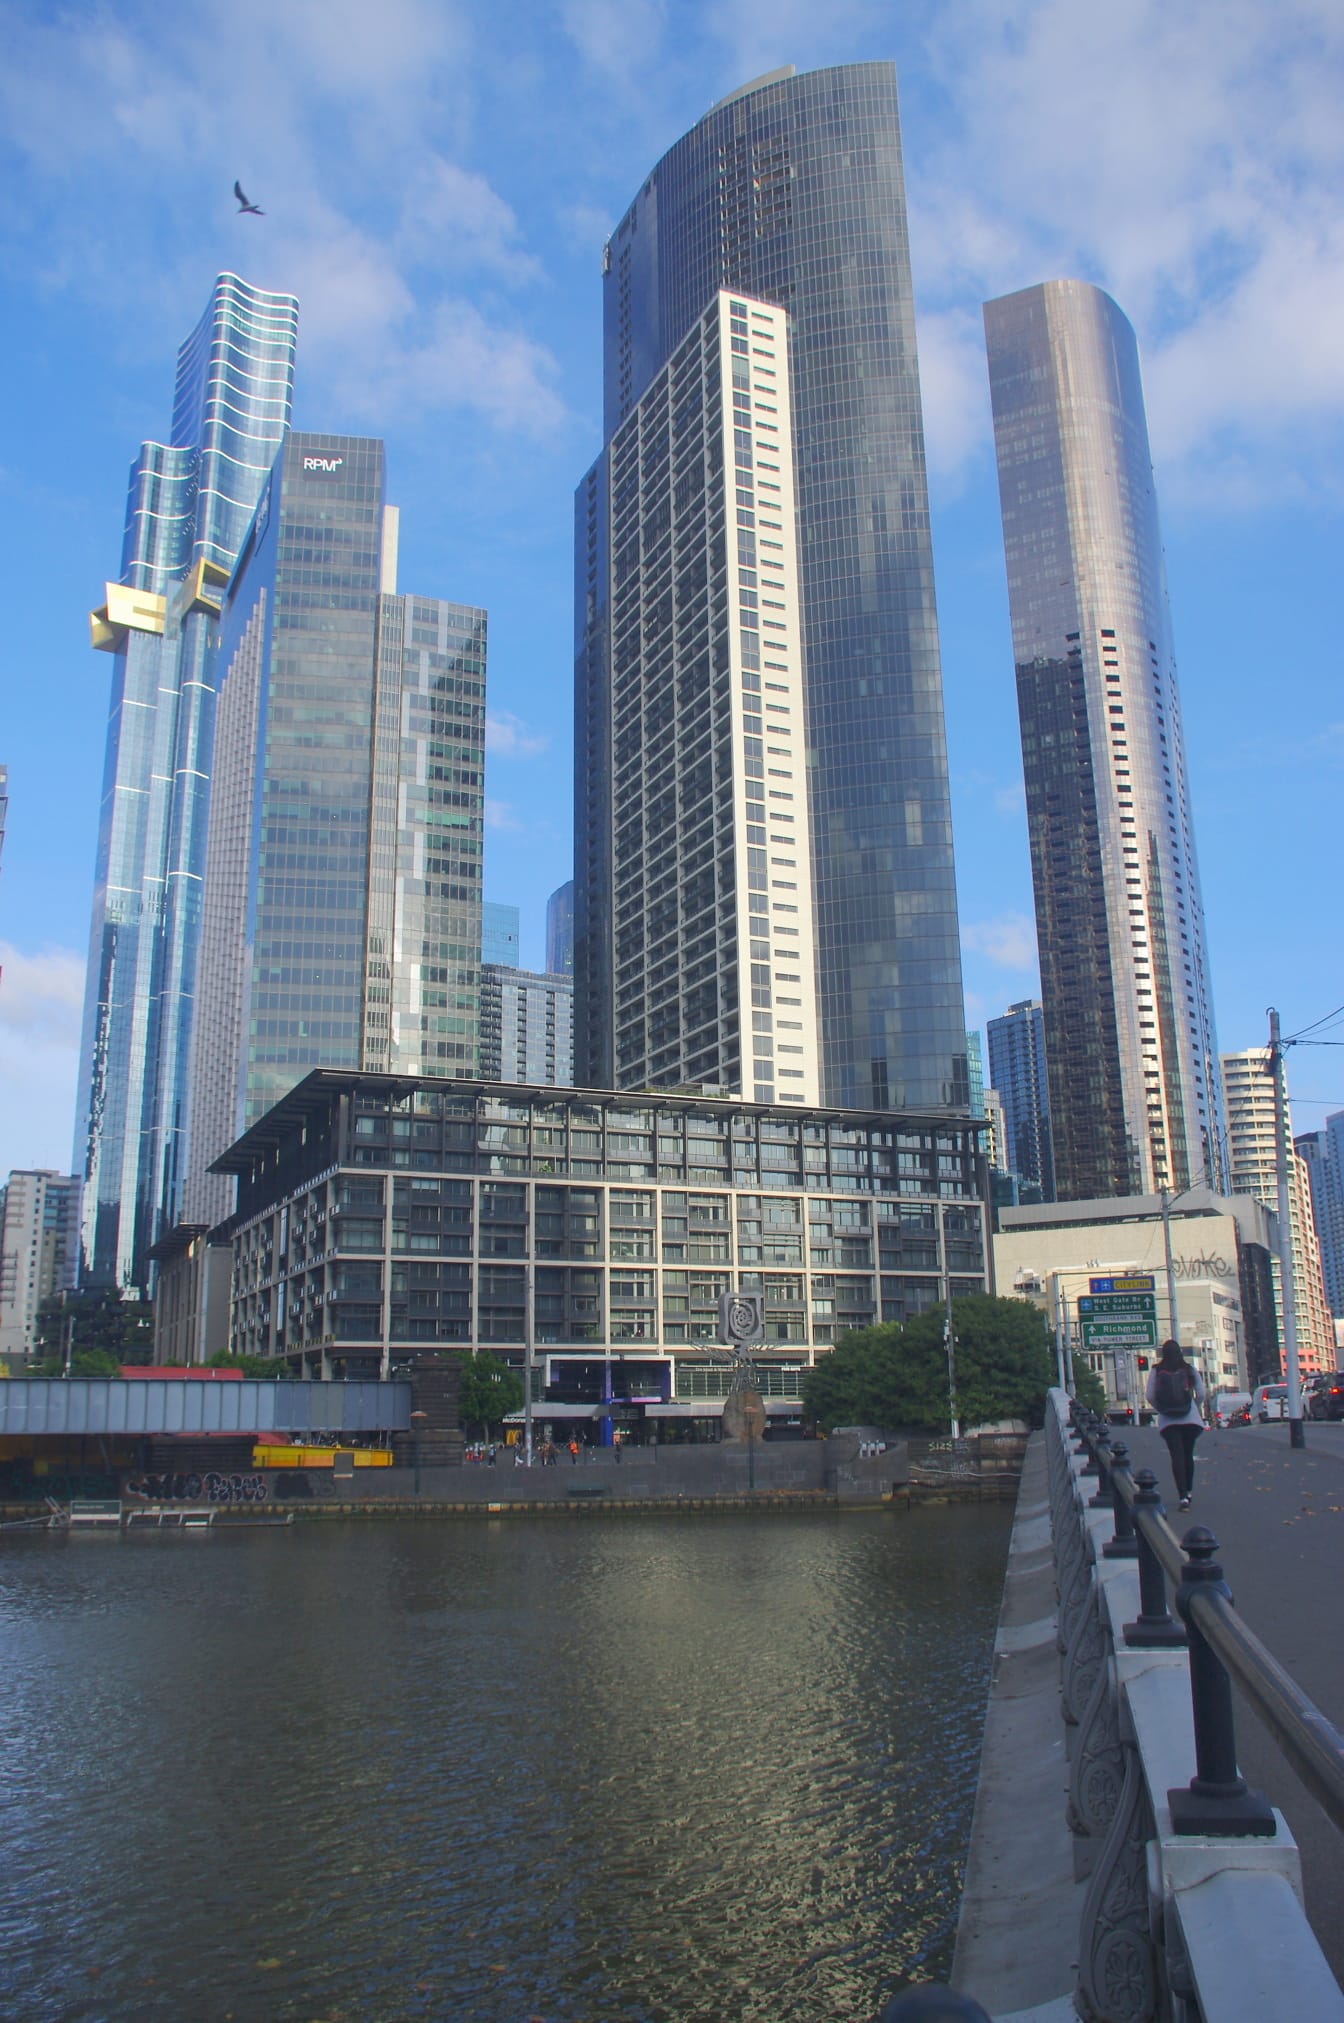 Tour résidentielle moderne de gratte-ciel dans le centre-ville de Melbourne, Australie